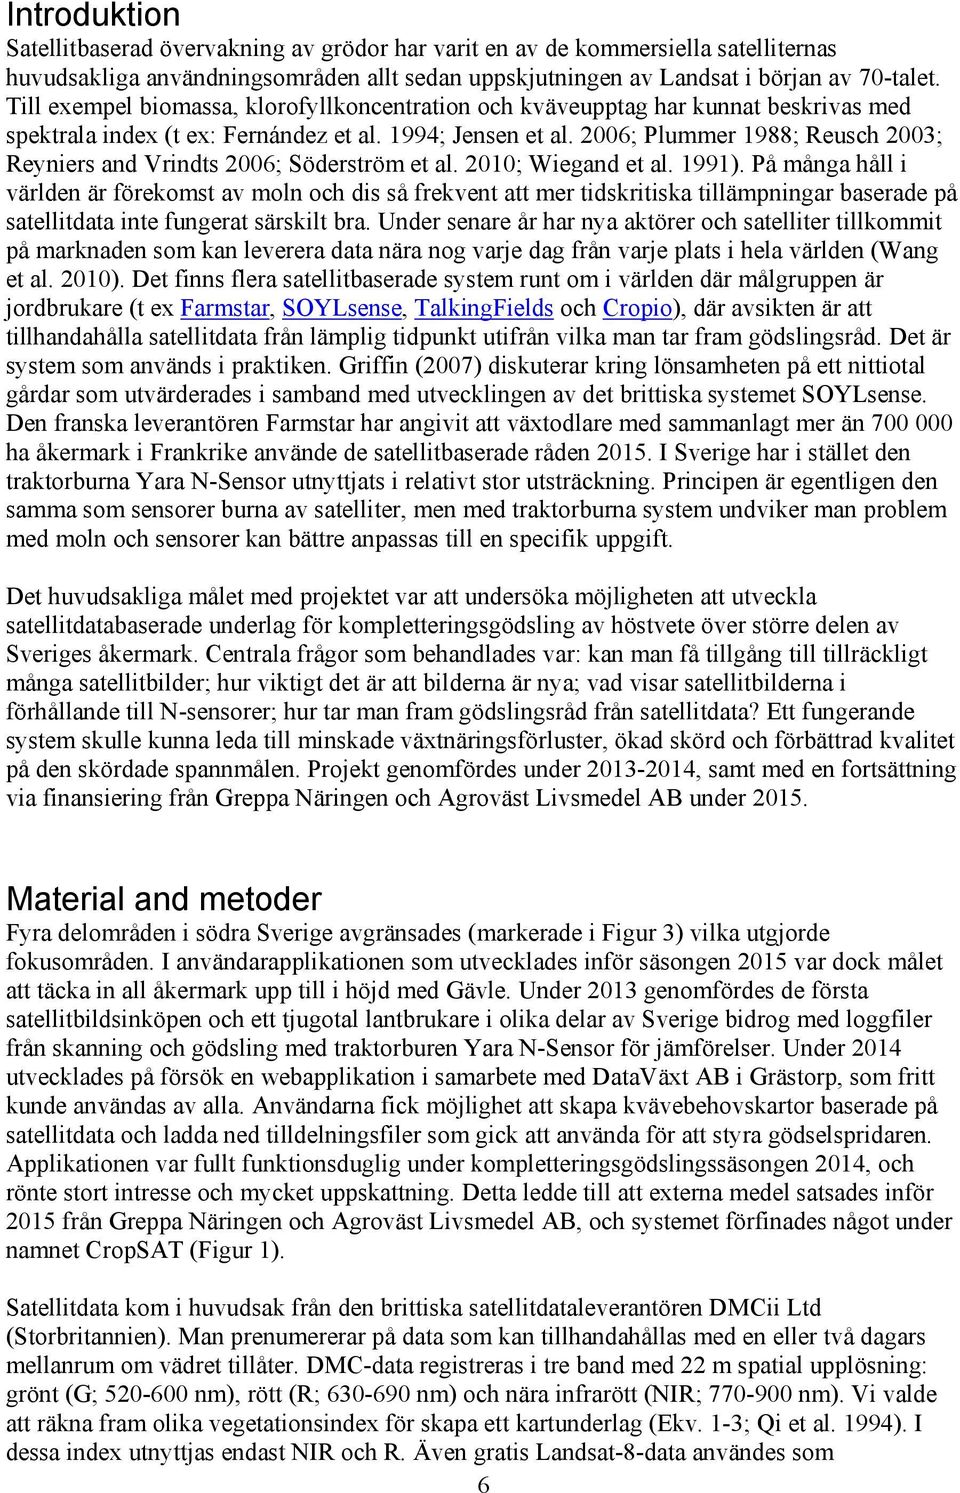 2006; Plummer 1988; Reusch 2003; Reyniers and Vrindts 2006; Söderström et al. 2010; Wiegand et al. 1991).